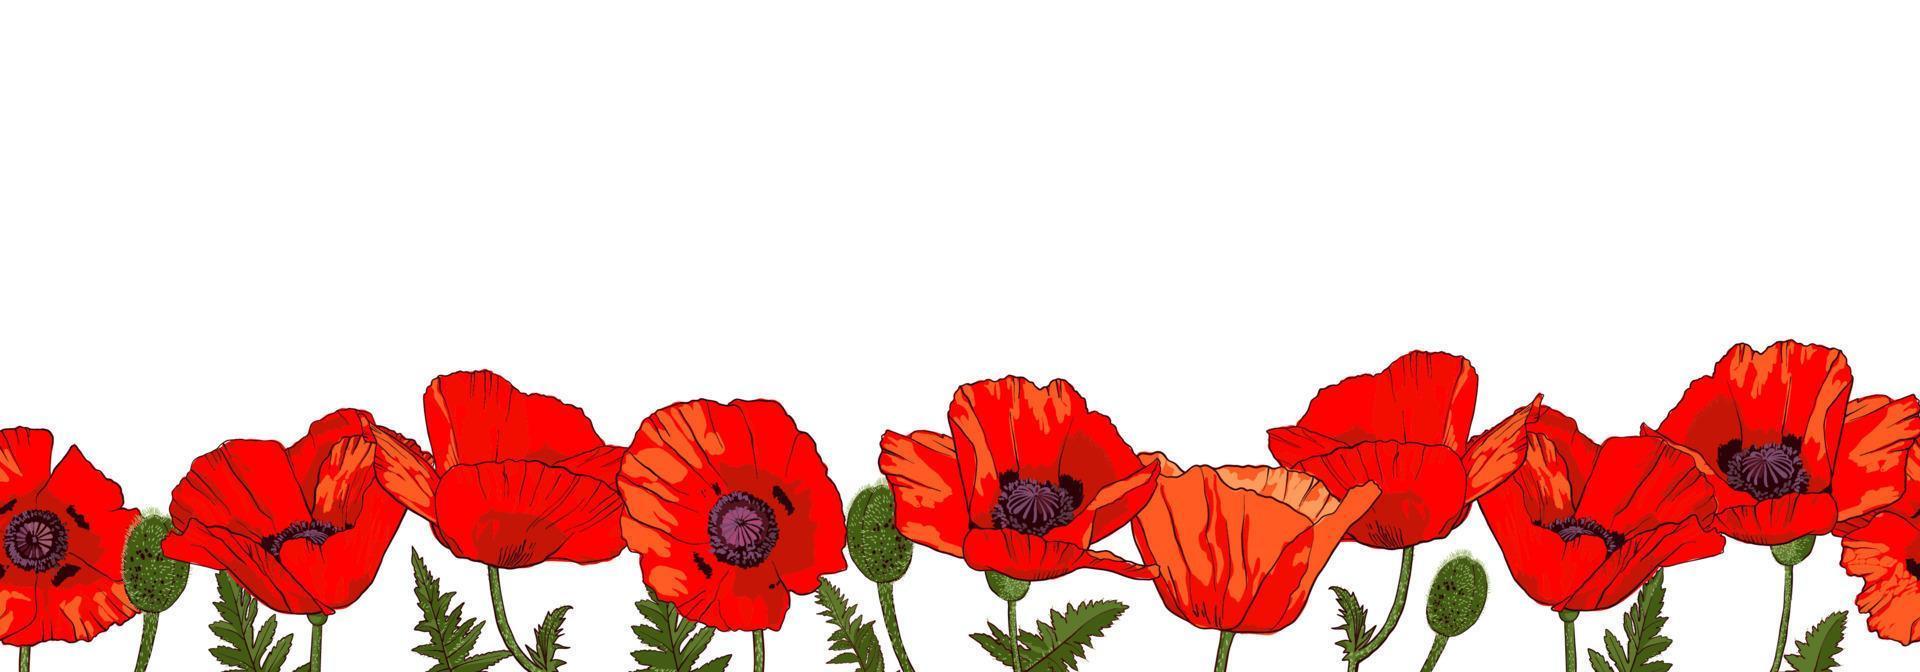 bordo orizzontale senza cuciture con fiori di papavero rosso disegnati a mano isolati su sfondo bianco. illustrazione vettoriale. vettore